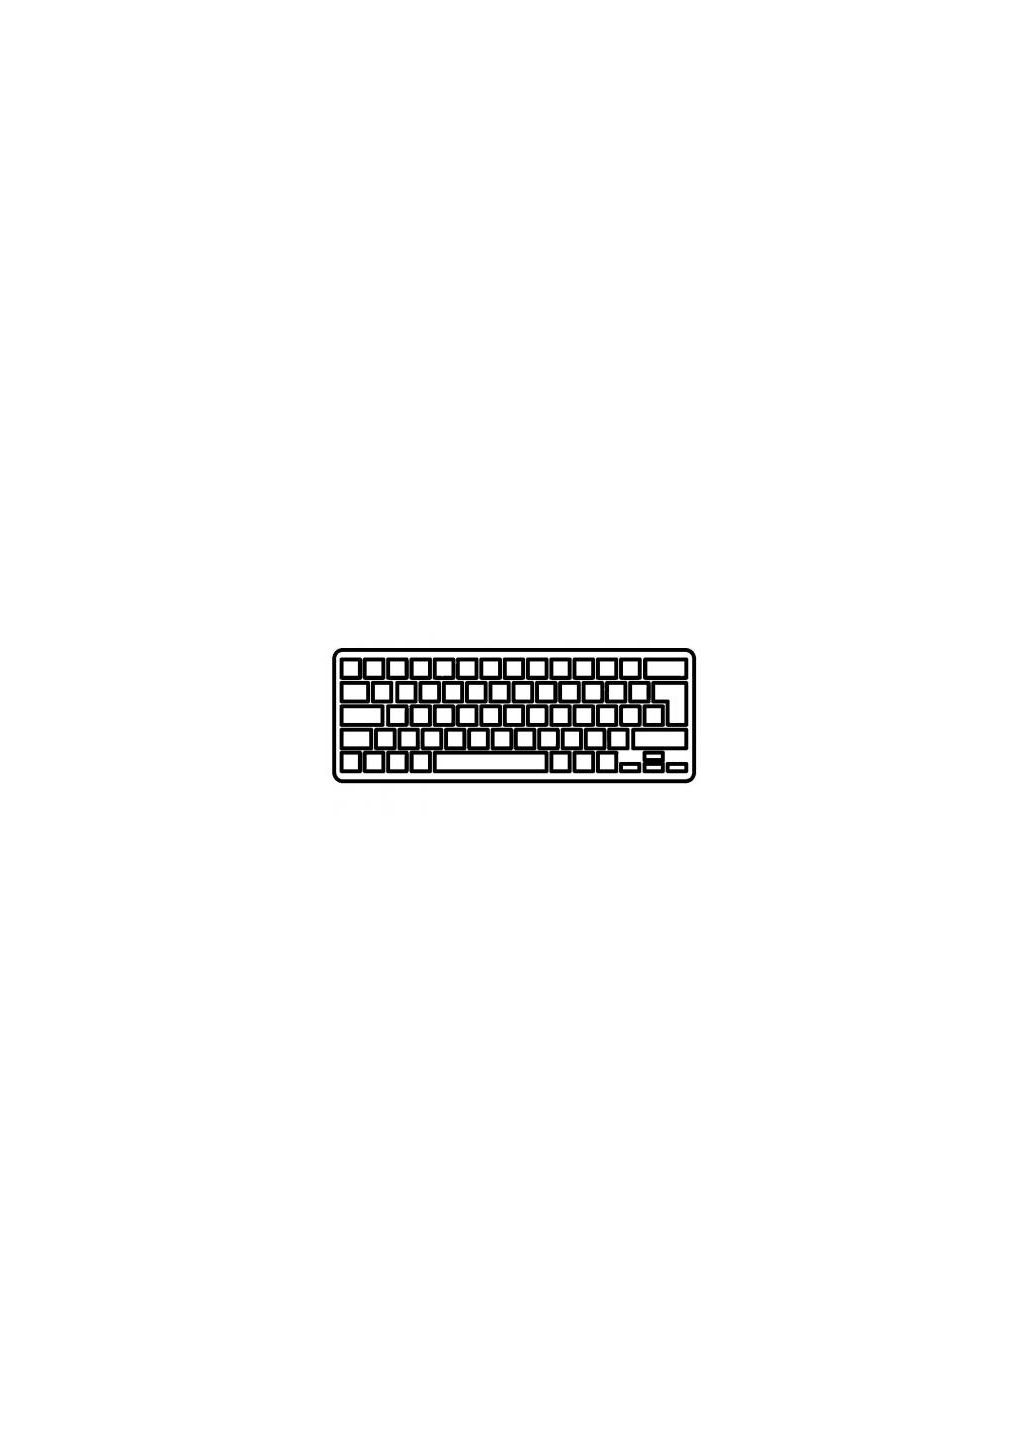 Клавиатура ноутбука Mini 102/110c/110c1000/CQ10-100 Series розовая RU (A43337) HP mini 102/110c/110c-1000/cq10-100 series розовая ru (276706763)